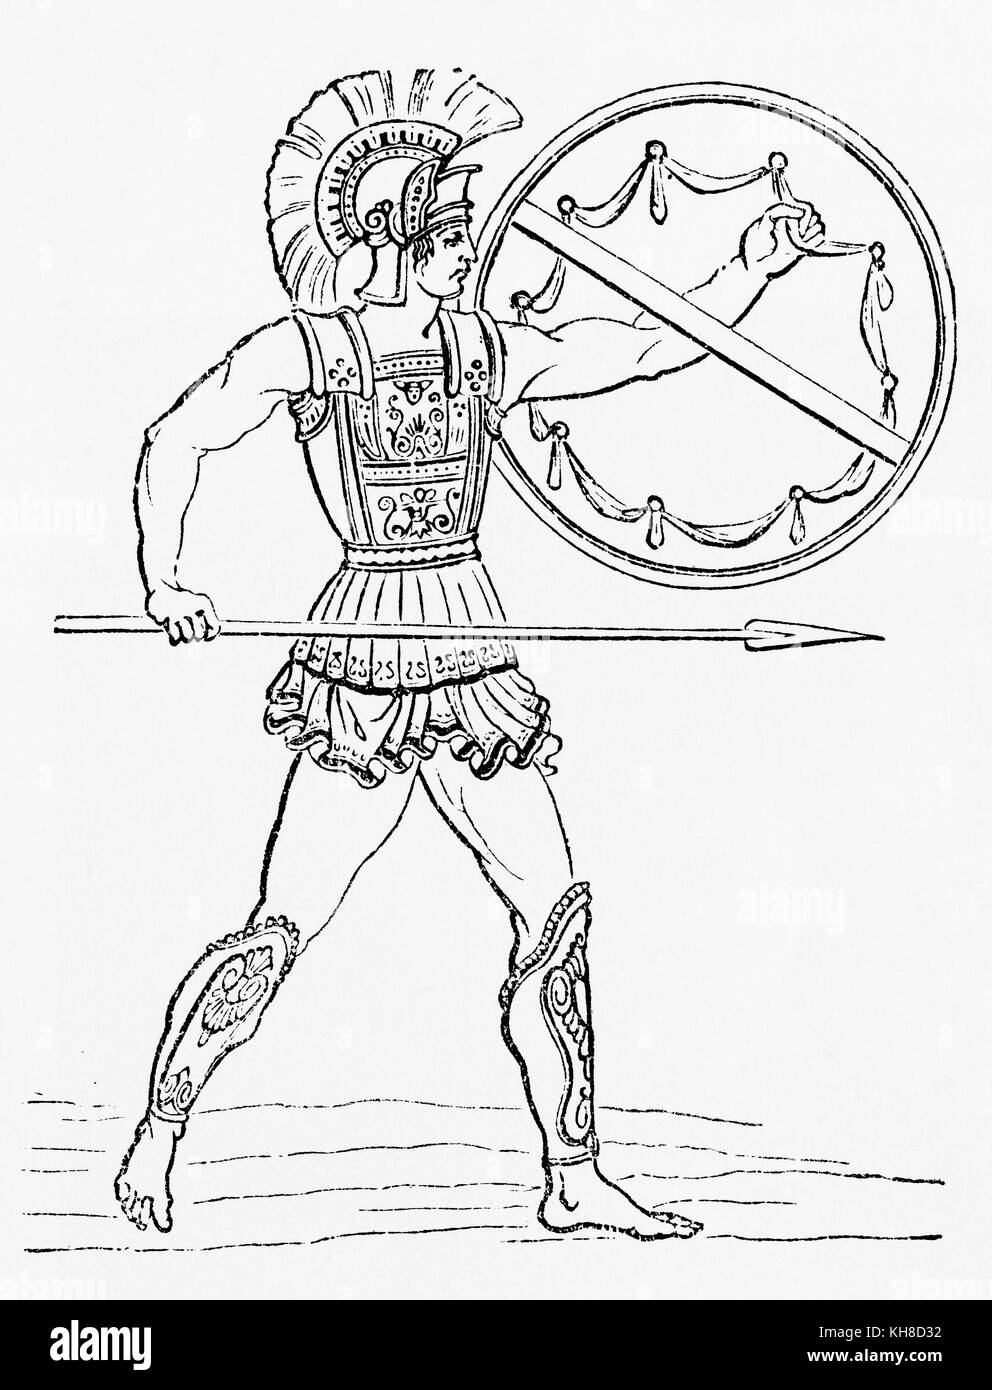 Un guerriero greco. Da The Illustrated History of the World di Ward and Lock, pubblicato intorno al 1882. Foto Stock